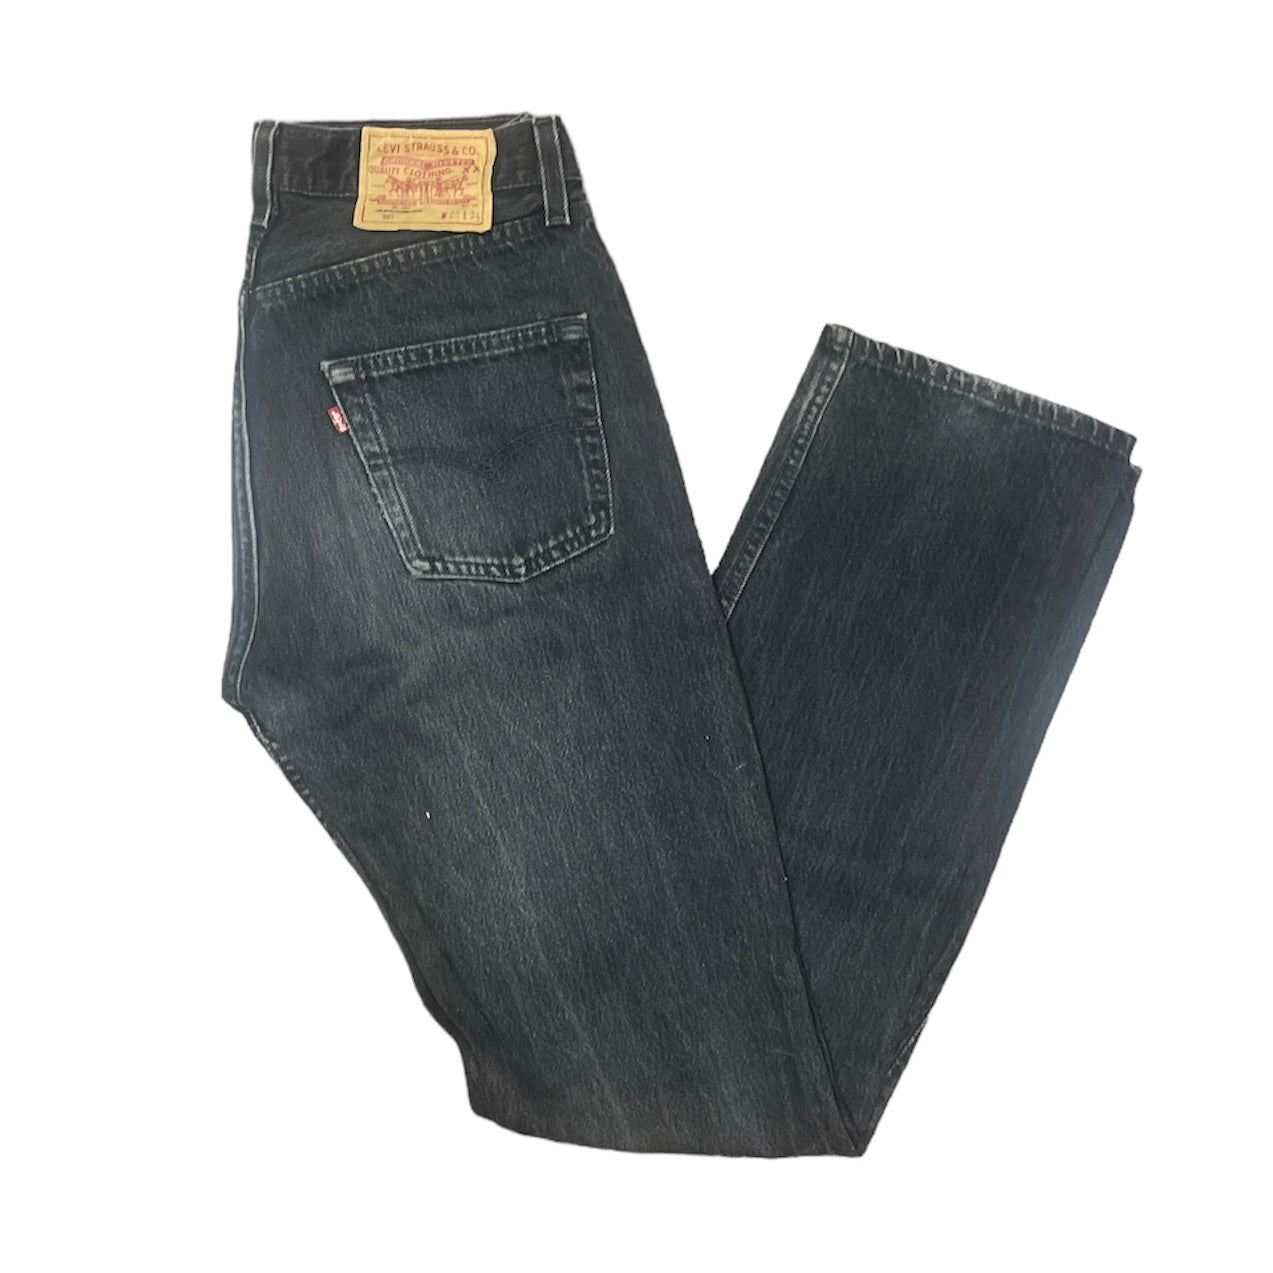 Vintage Levis 501 Grey/Black Jeans (W29/L34)